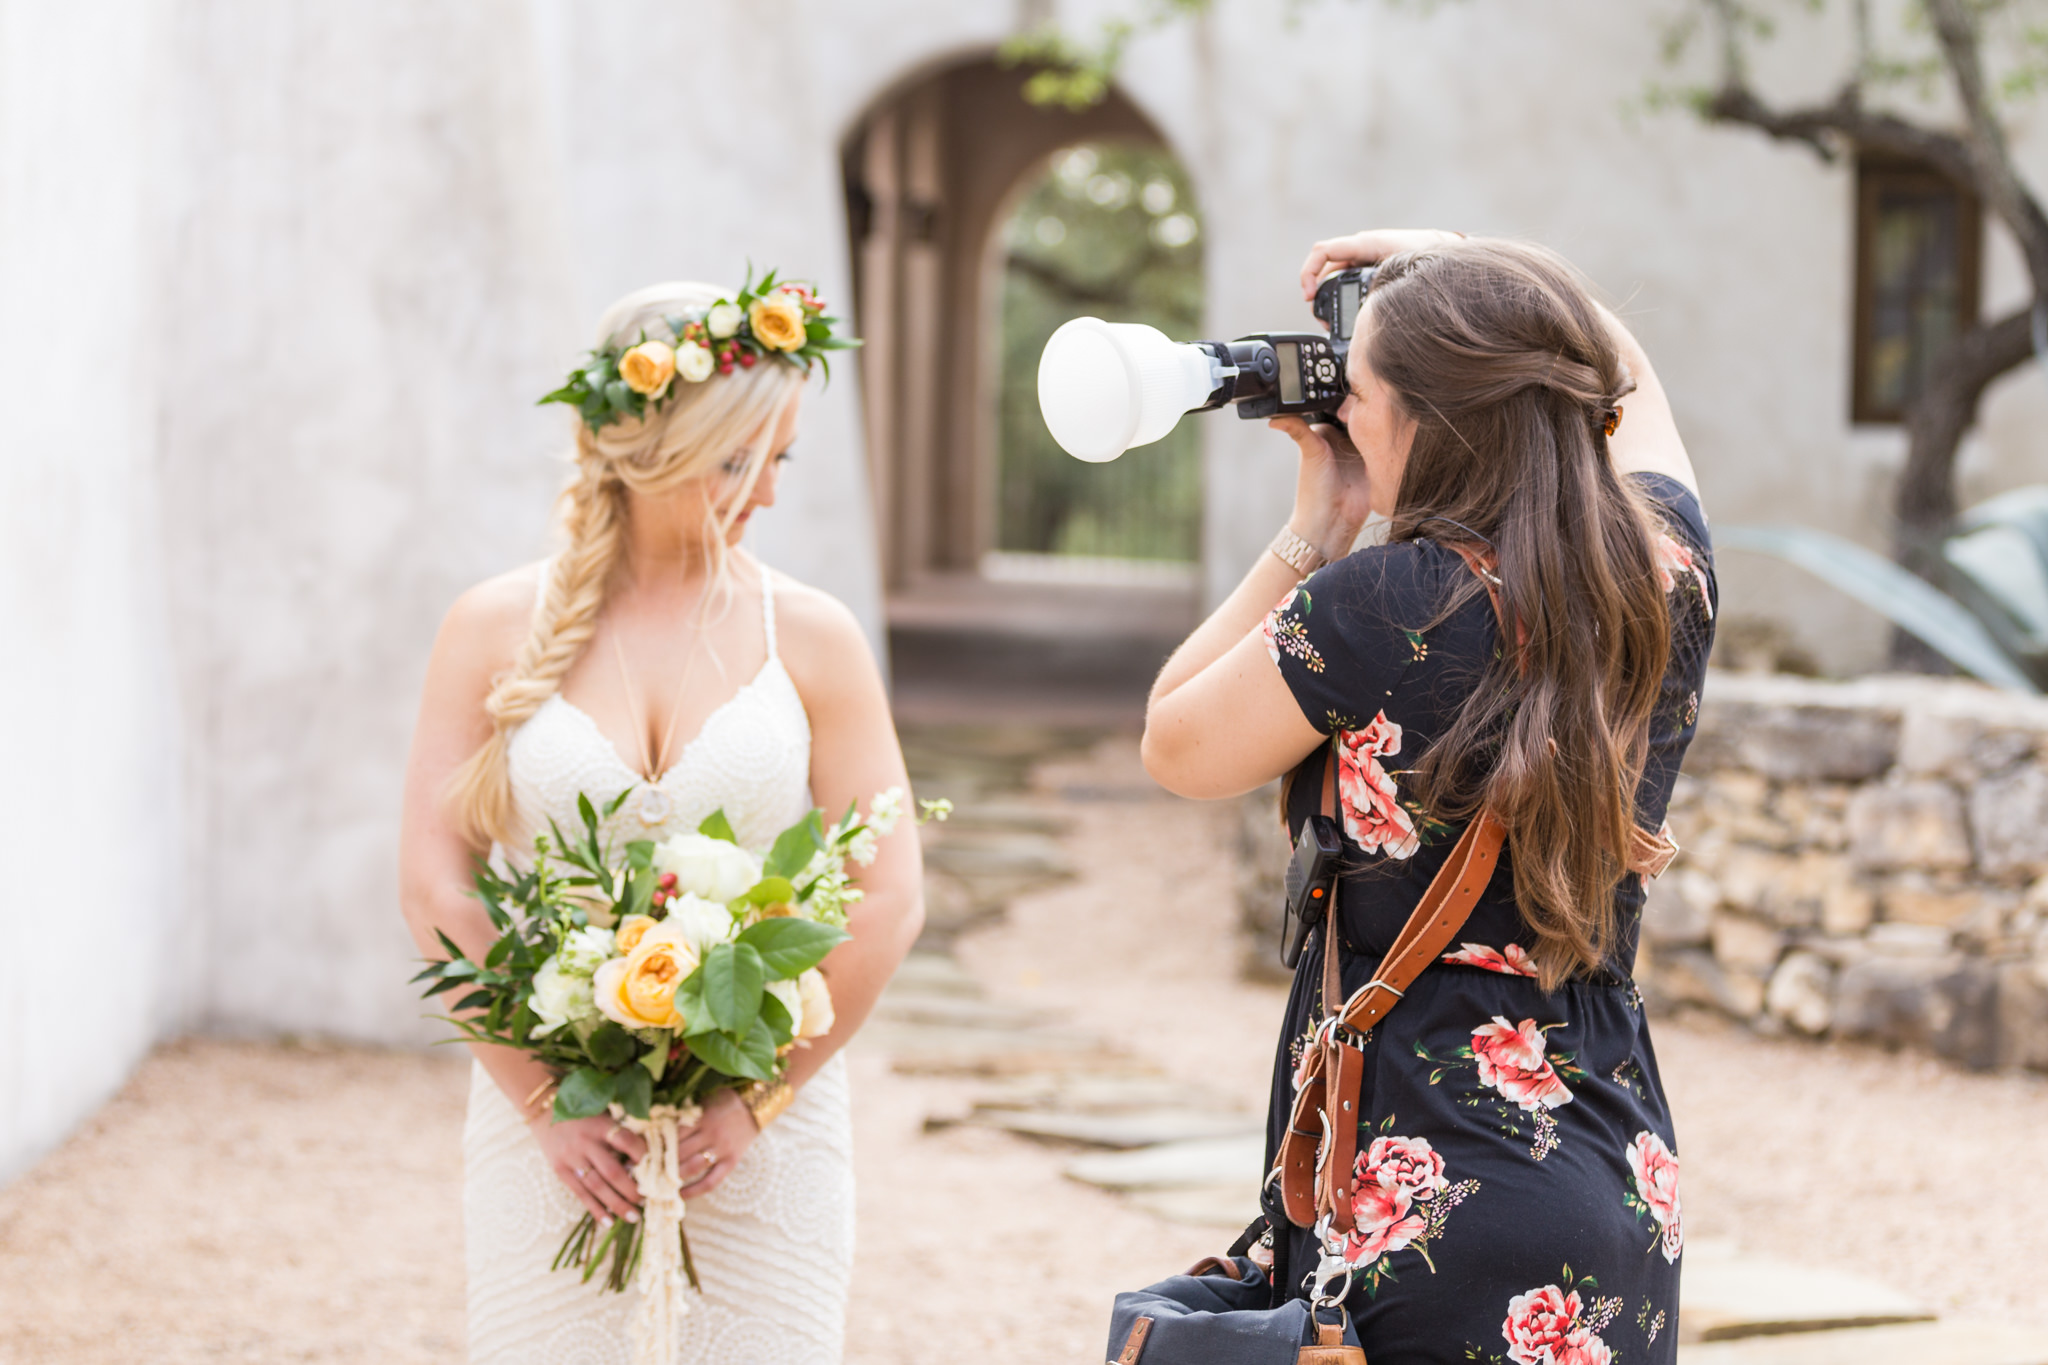 2017 Behind the Scenes with Dawn Elizabeth Studios, San Antonio Wedding Photographer